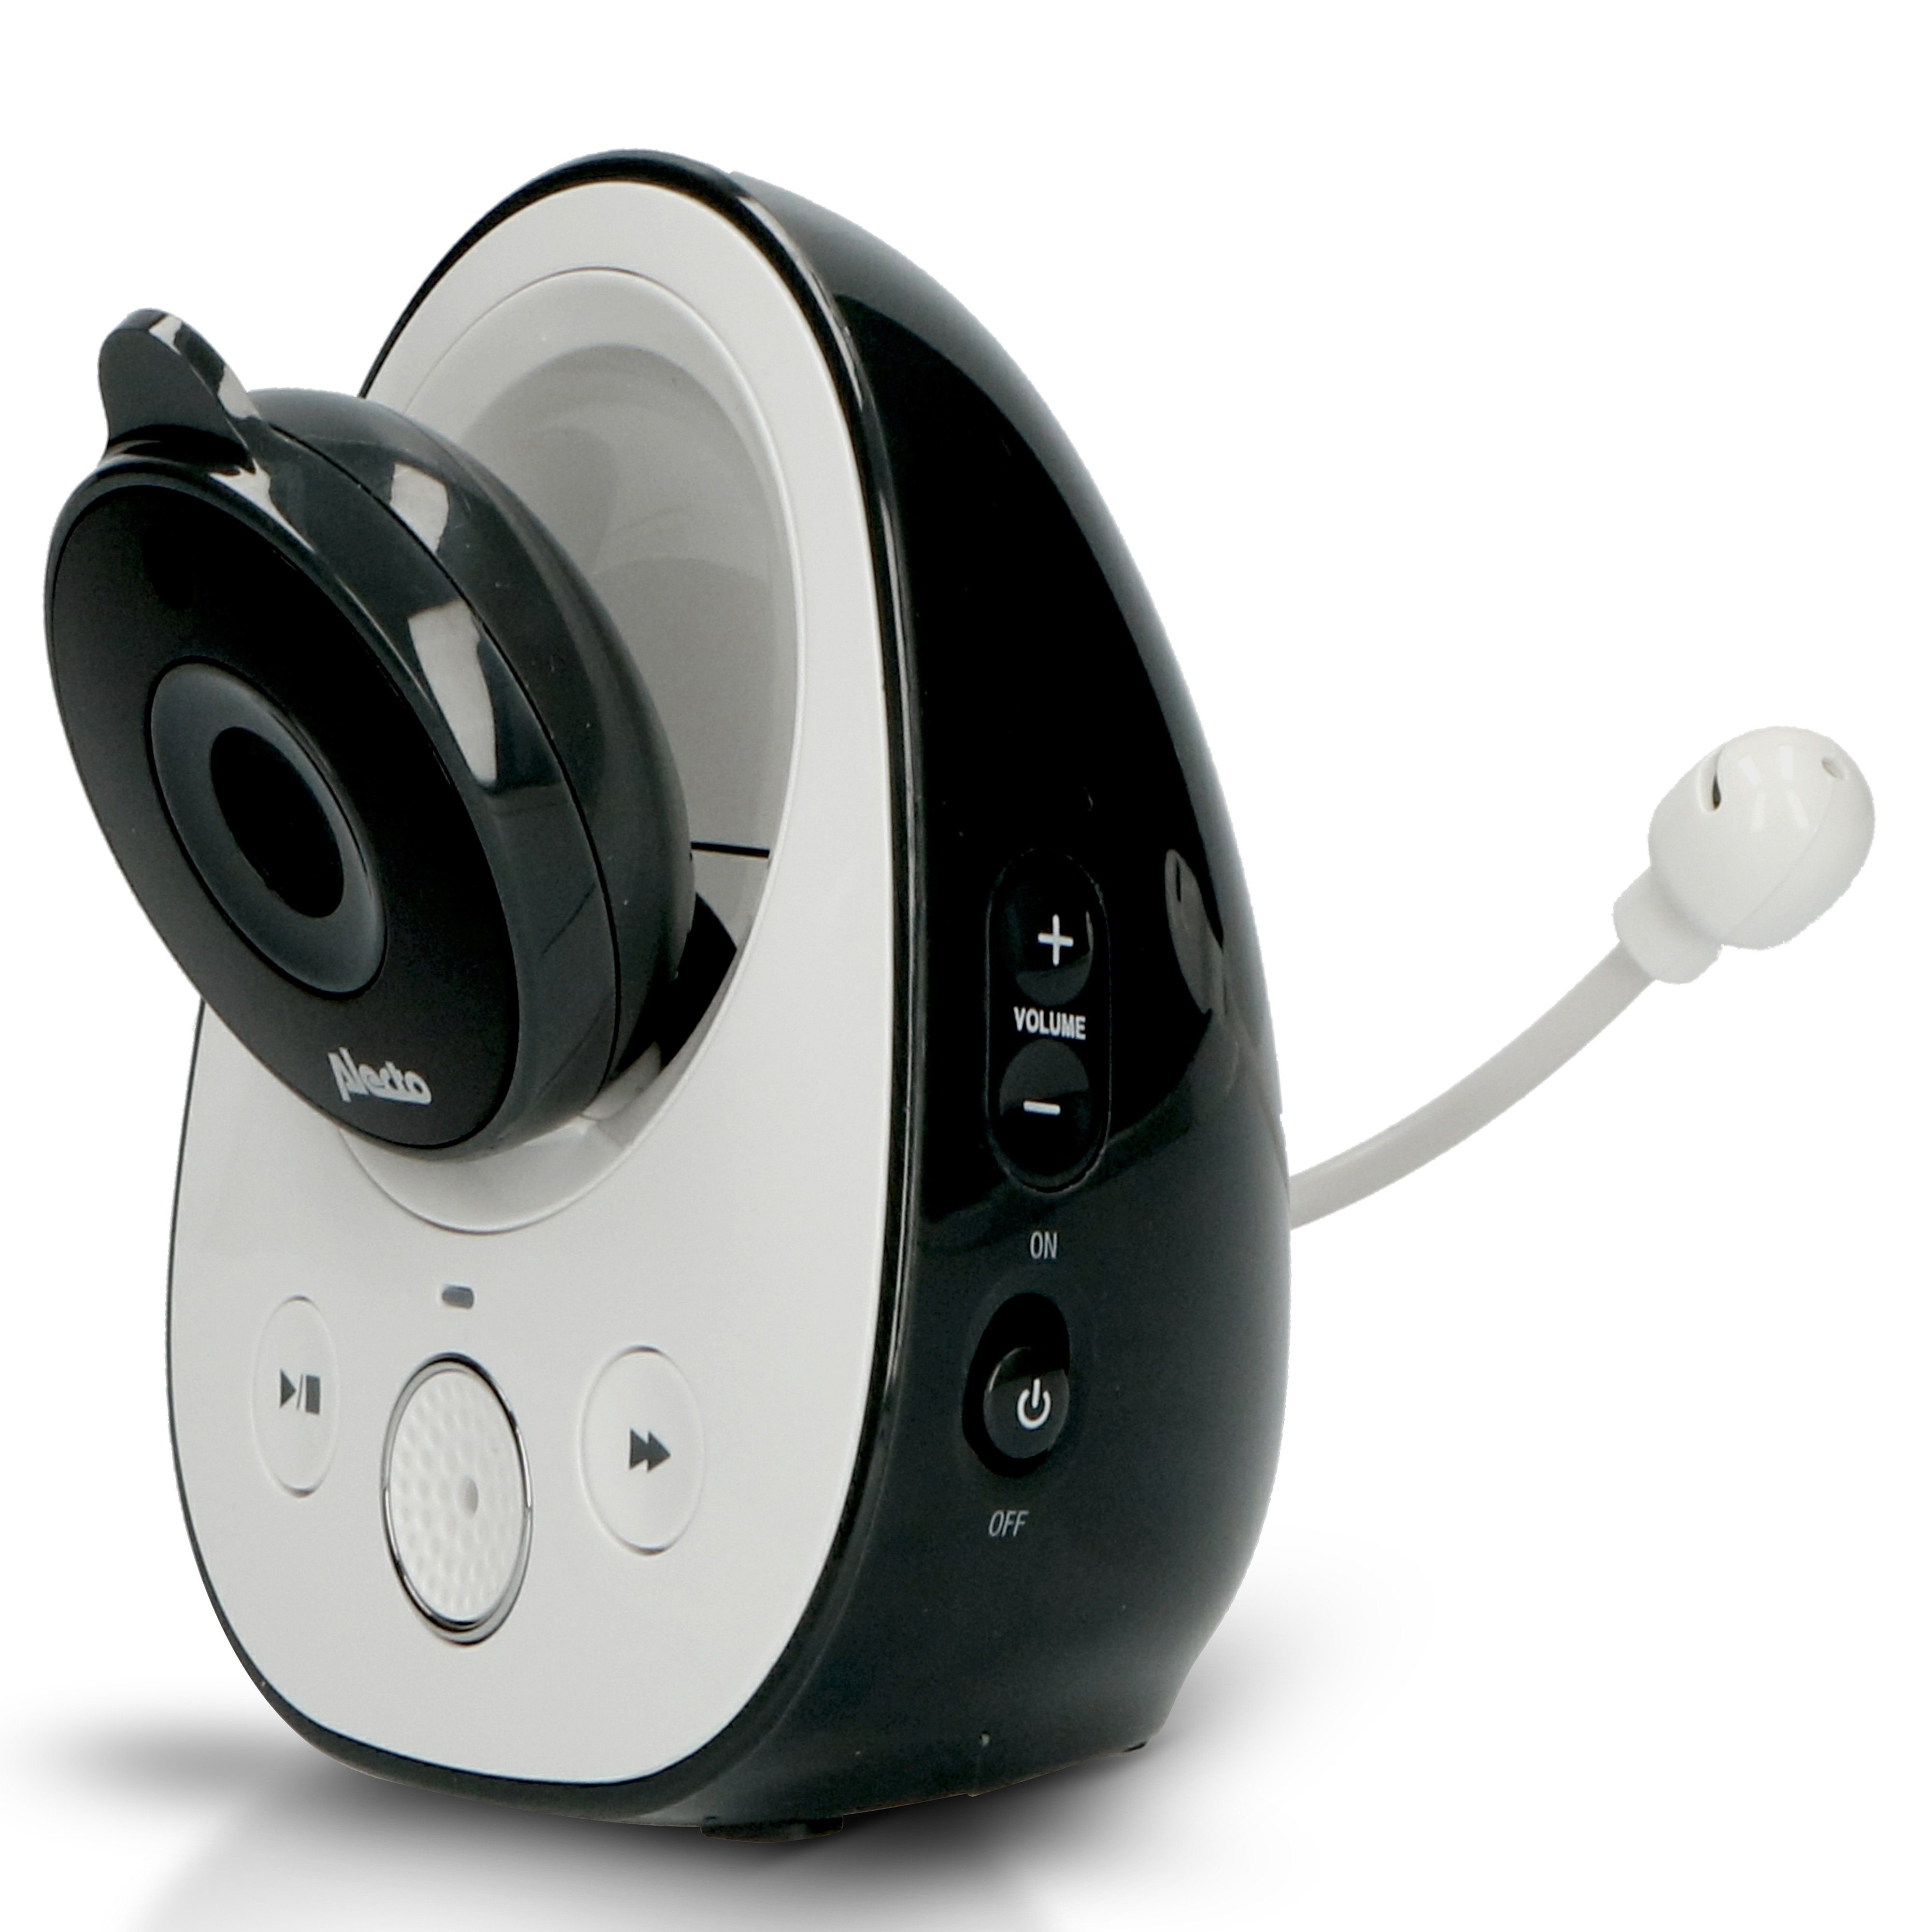 DVM-150 Video-Babyphone Alecto